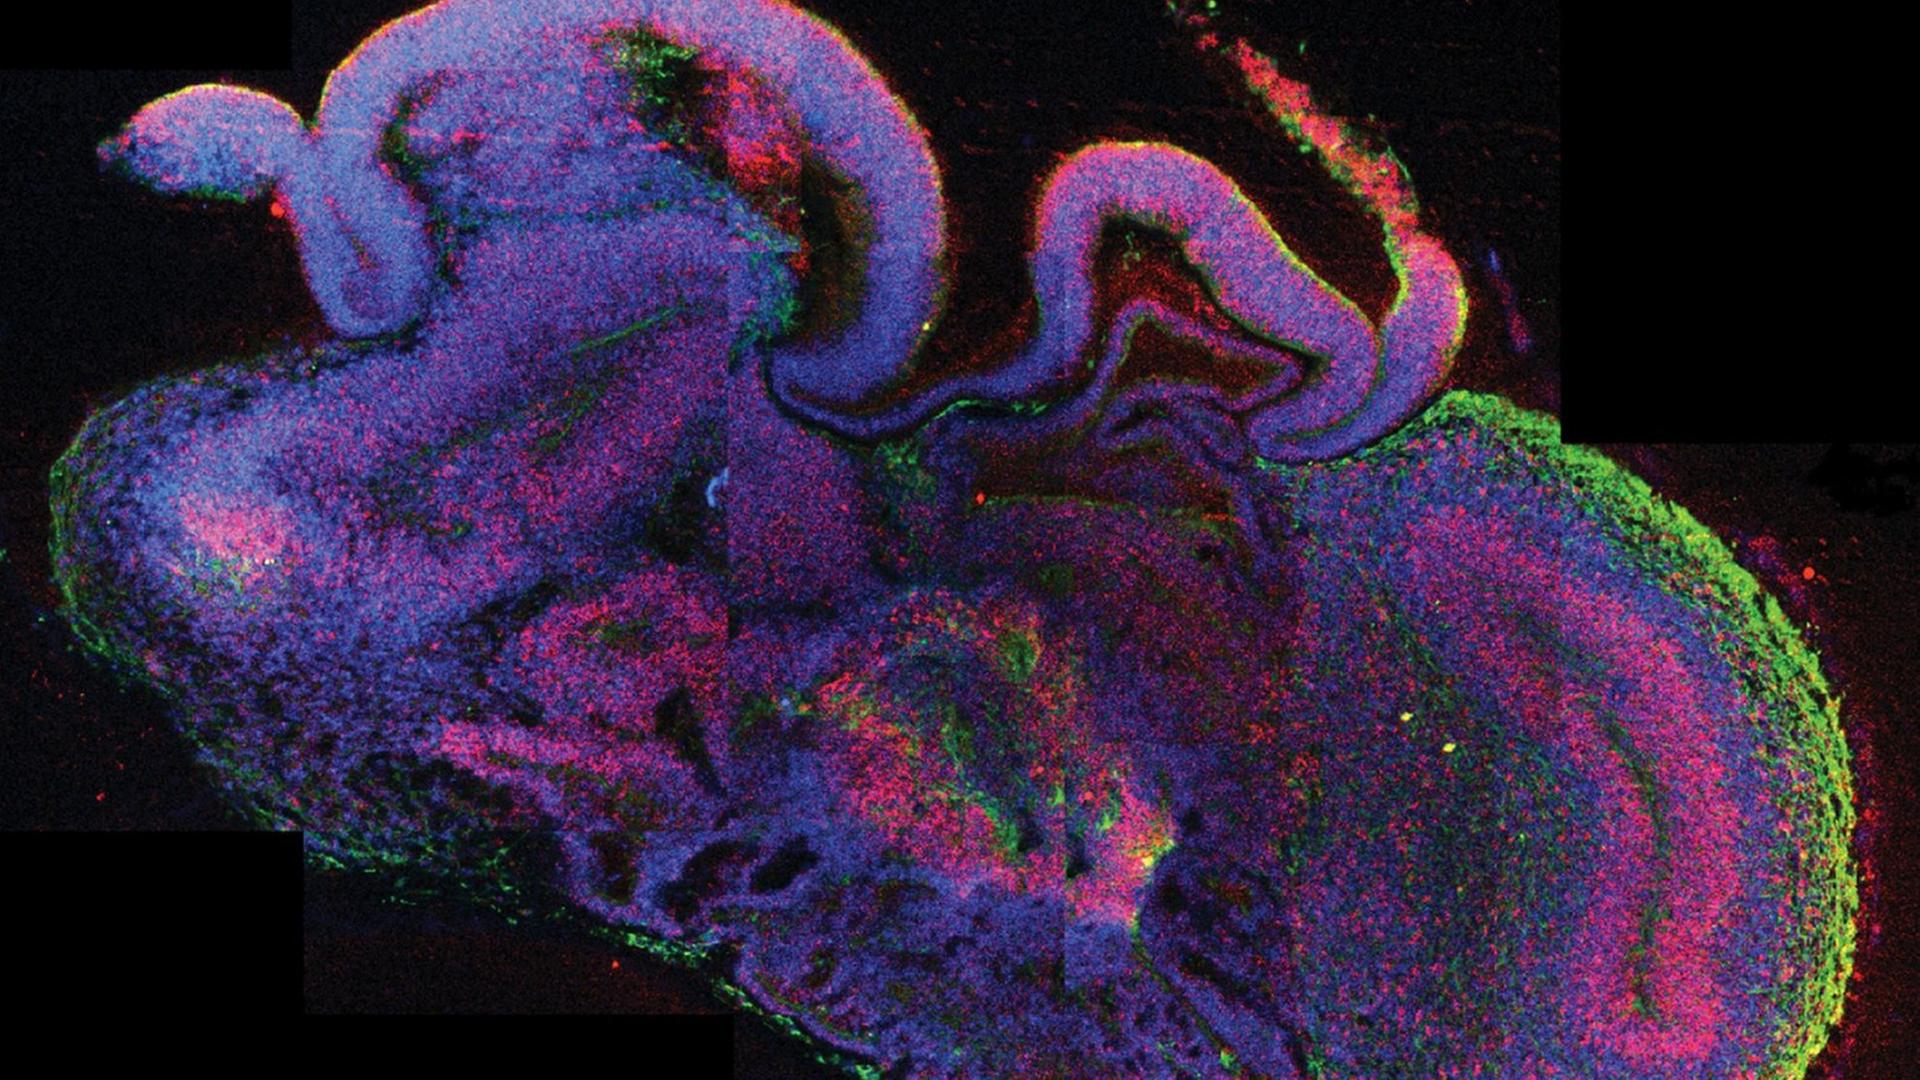 Die undatierte mikroskopische Querschnittsaufnahme eines ganzen cerebralen Organoids zeigt die Entstehung verschiedener Hirnregionen. Die etwa vier Millimeter großen dreidimensionalen Modelle bilden die frühe Entwicklung des menschlichen Gehirns nach. Ausgangspunkt für die Versuche eines waren zunächst embryonale Stammzellen.